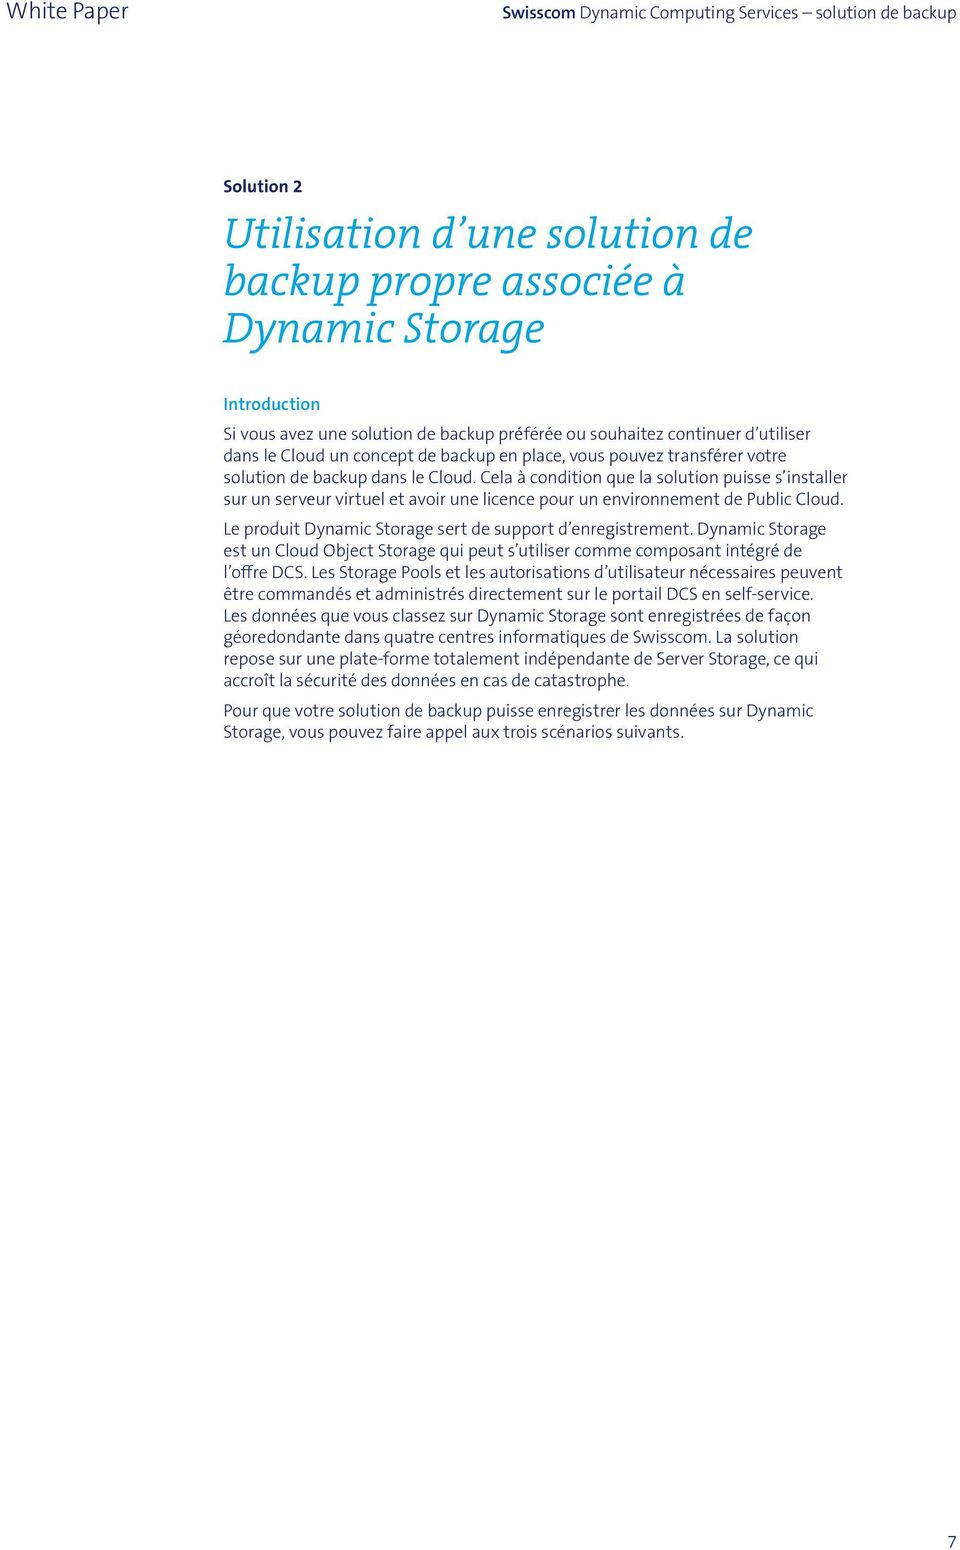 Cela à condition que la solution puisse s installer sur un serveur virtuel et avoir une licence pour un environnement de Public Cloud. Le produit Dynamic Storage sert de support d enregistrement.